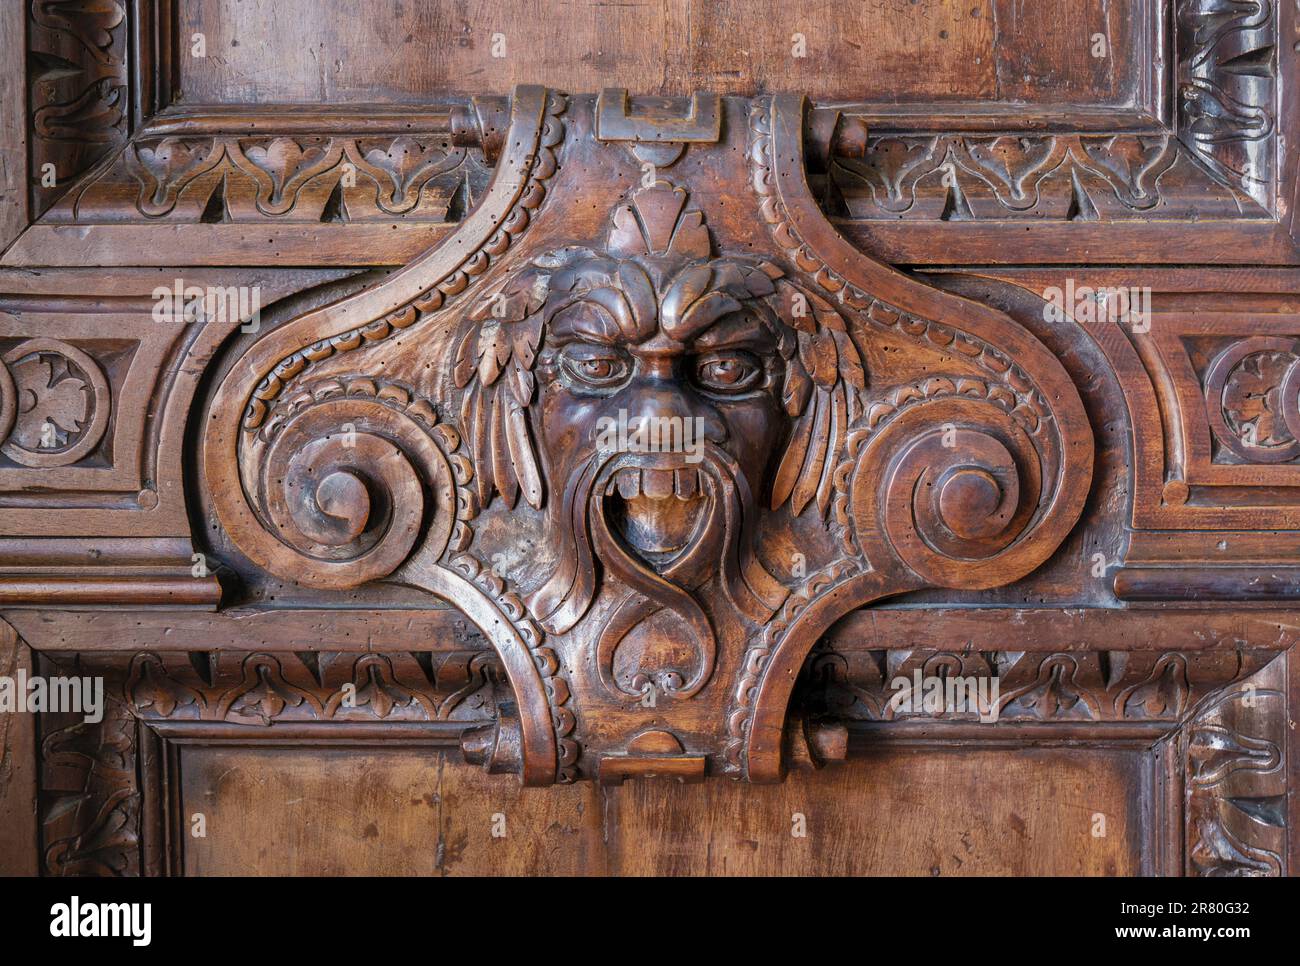 Rostro grotesco tallado en madera en el Palacio Ducal o Palacio de los Doges, Venecia, Italia. Venecia es Patrimonio de la Humanidad por la UNESCO. Foto de stock